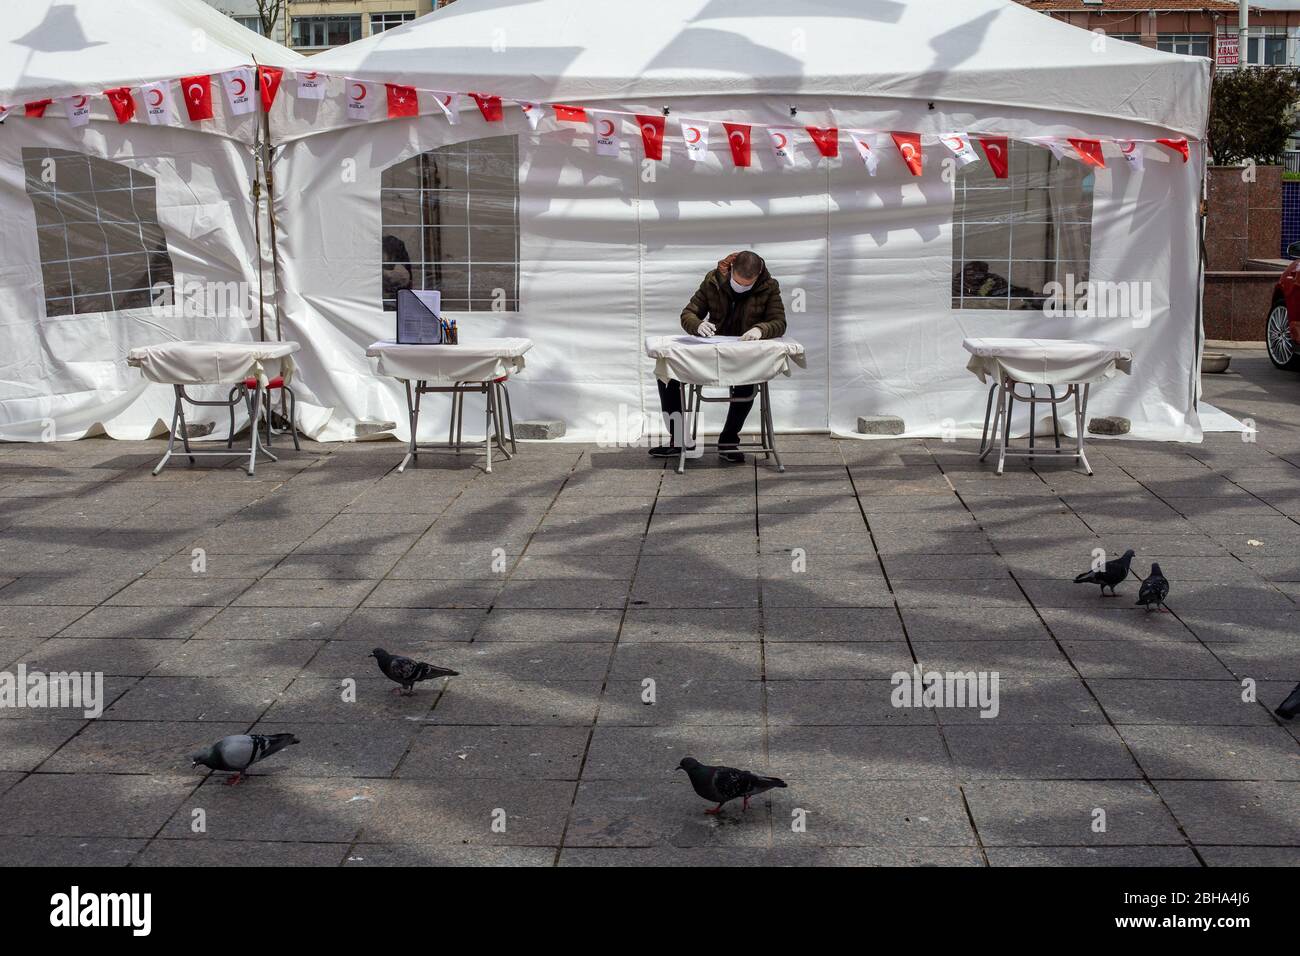 22 aprile 2020, Istanbul, Turchia: Persone che compilano il modulo di fronte alla tenda della Mezzaluna Rossa prima di donare sangue alla Mezzaluna Rossa turca. Foto Stock